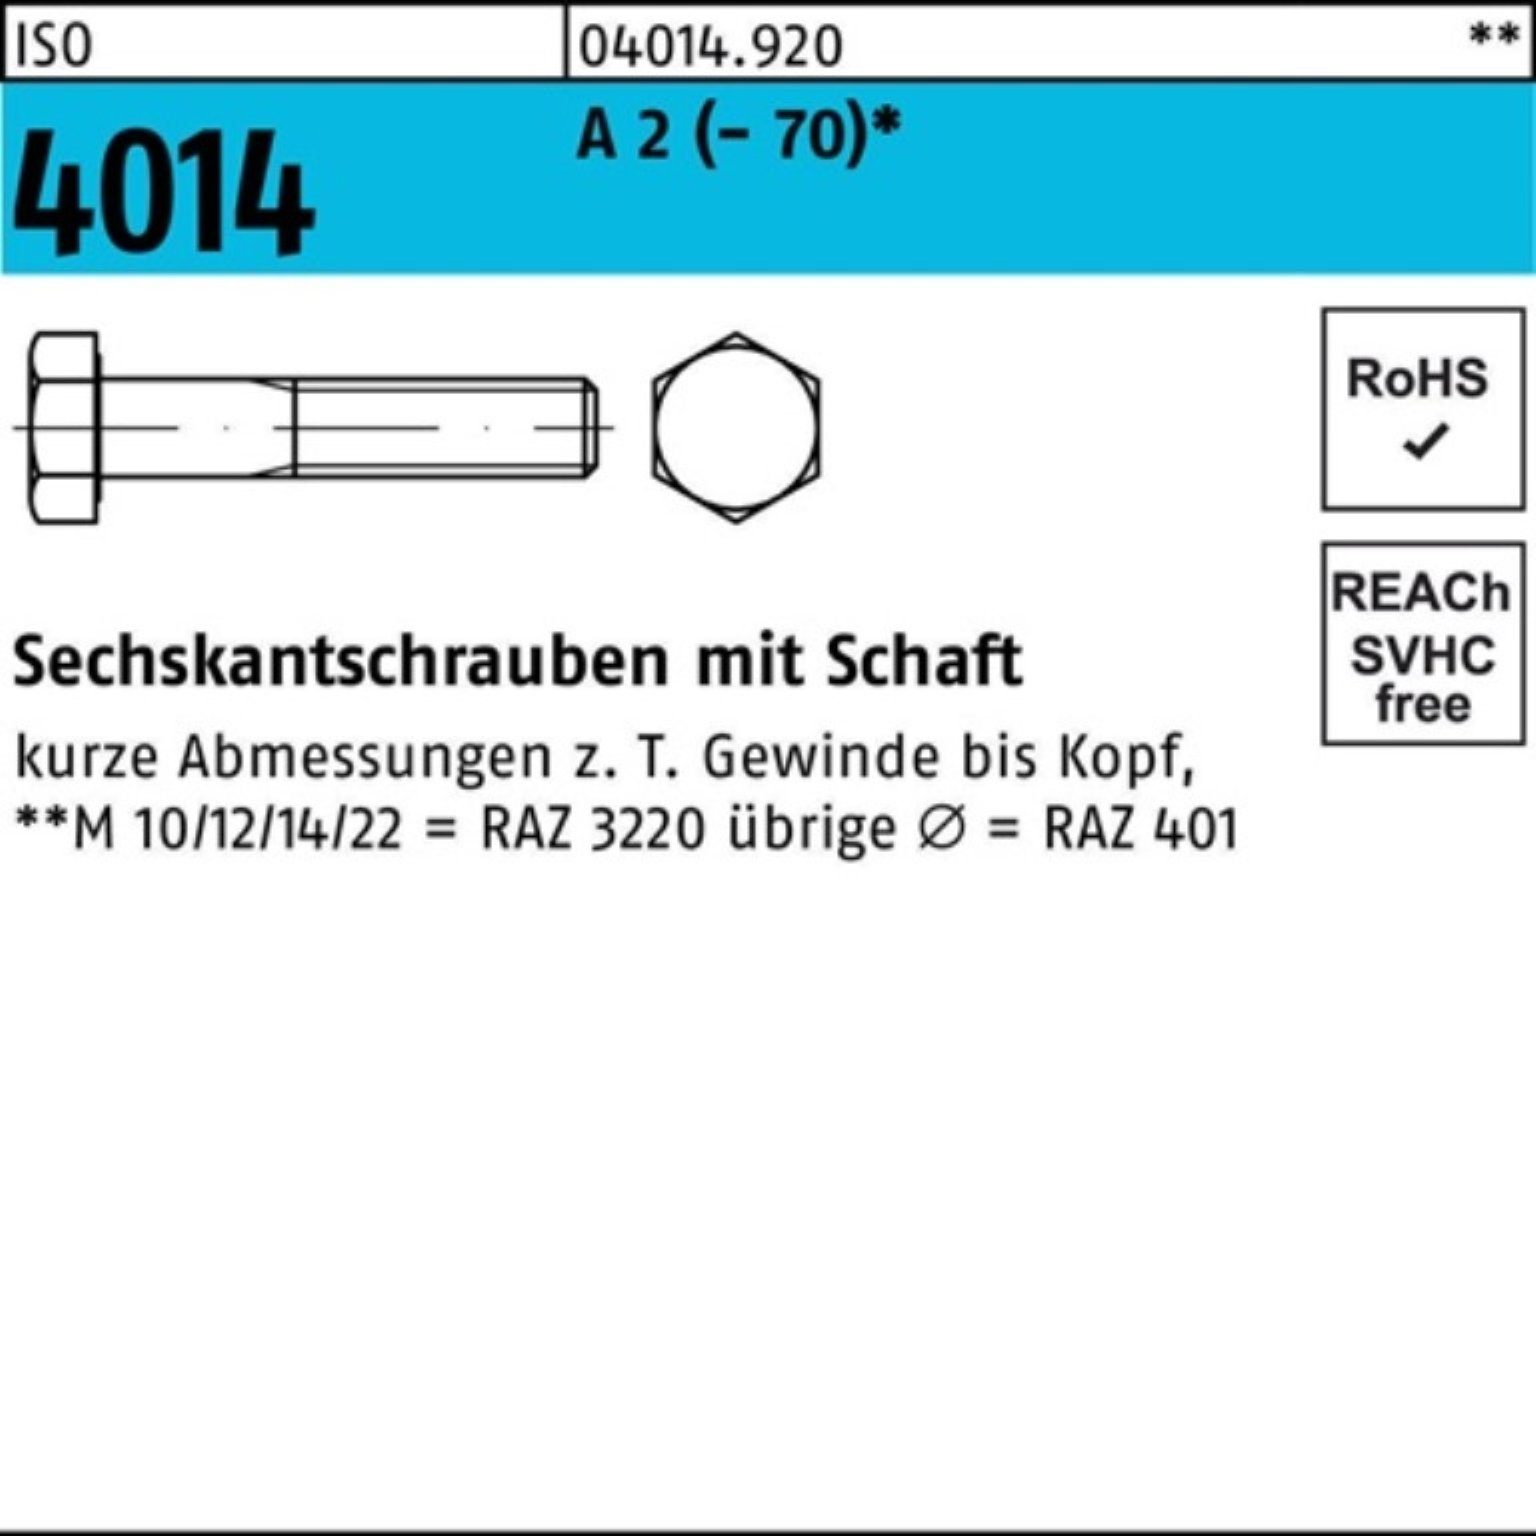 Bufab Sechskantschraube 100er Pack Sechskantschraube ISO 4014 Schaft M24x 75 A 2 (70) 1 Stü